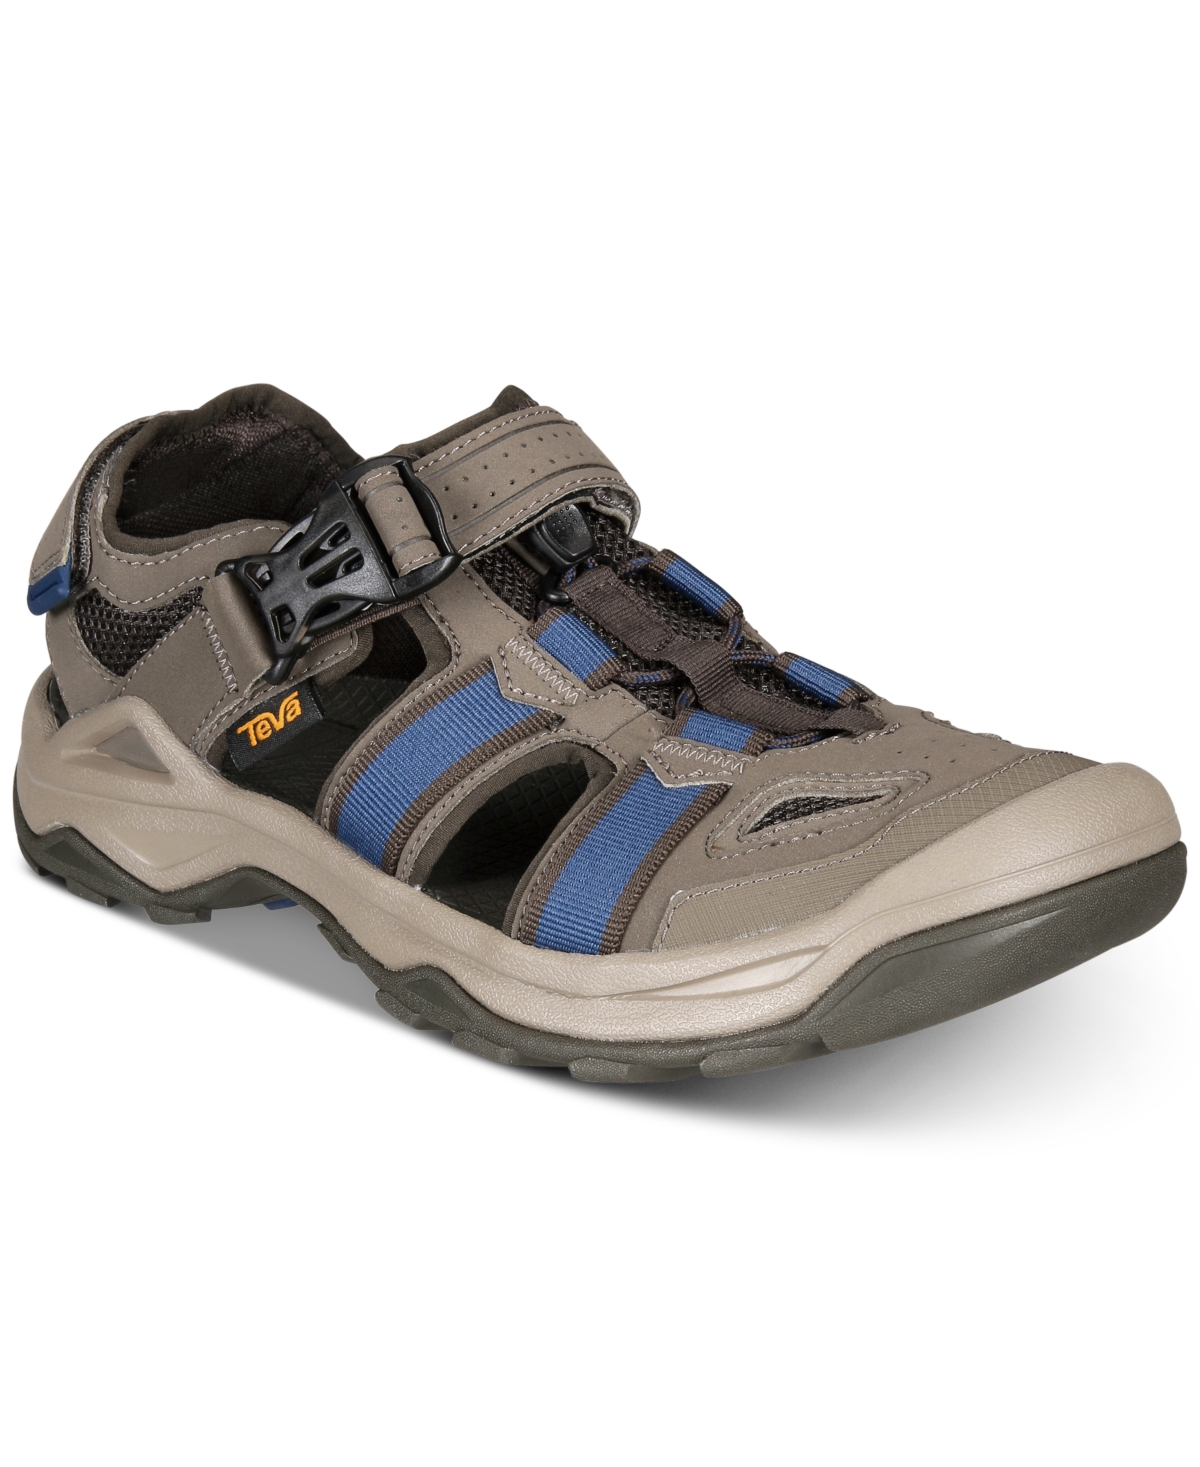 Men's Omnium 2 Water-Resistant Sandals - Bungee Cord